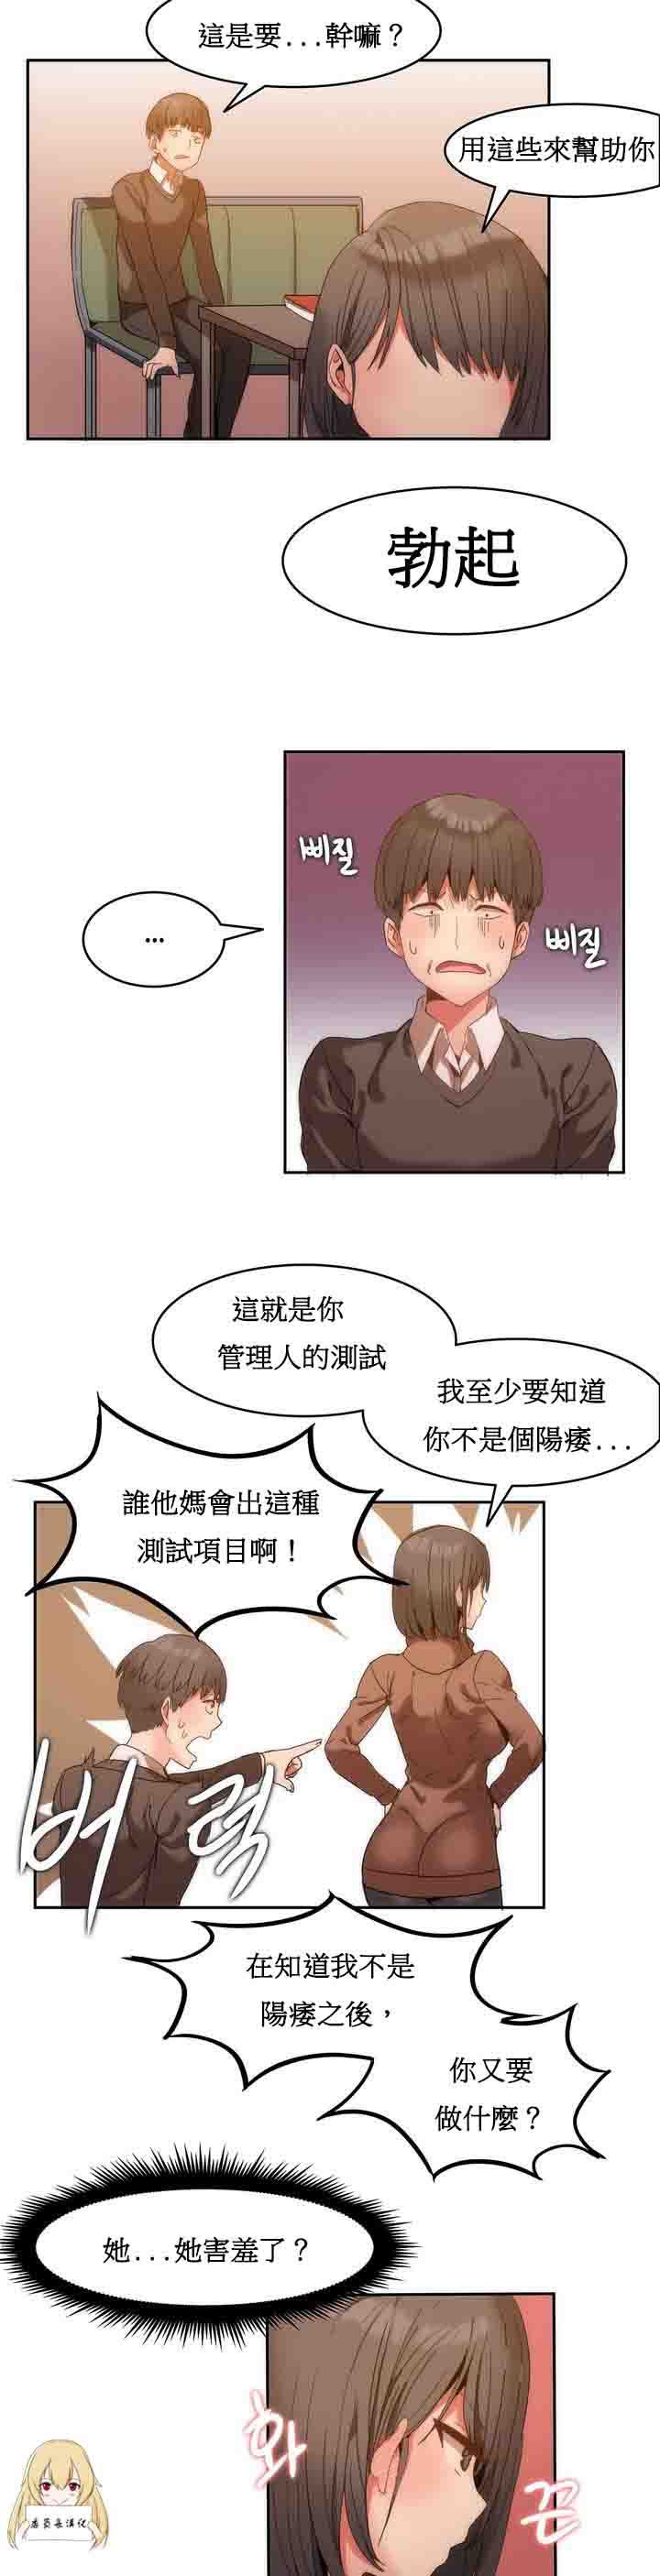 韩国污漫画 寄宿公寓-陰氣之洞 第1话 21